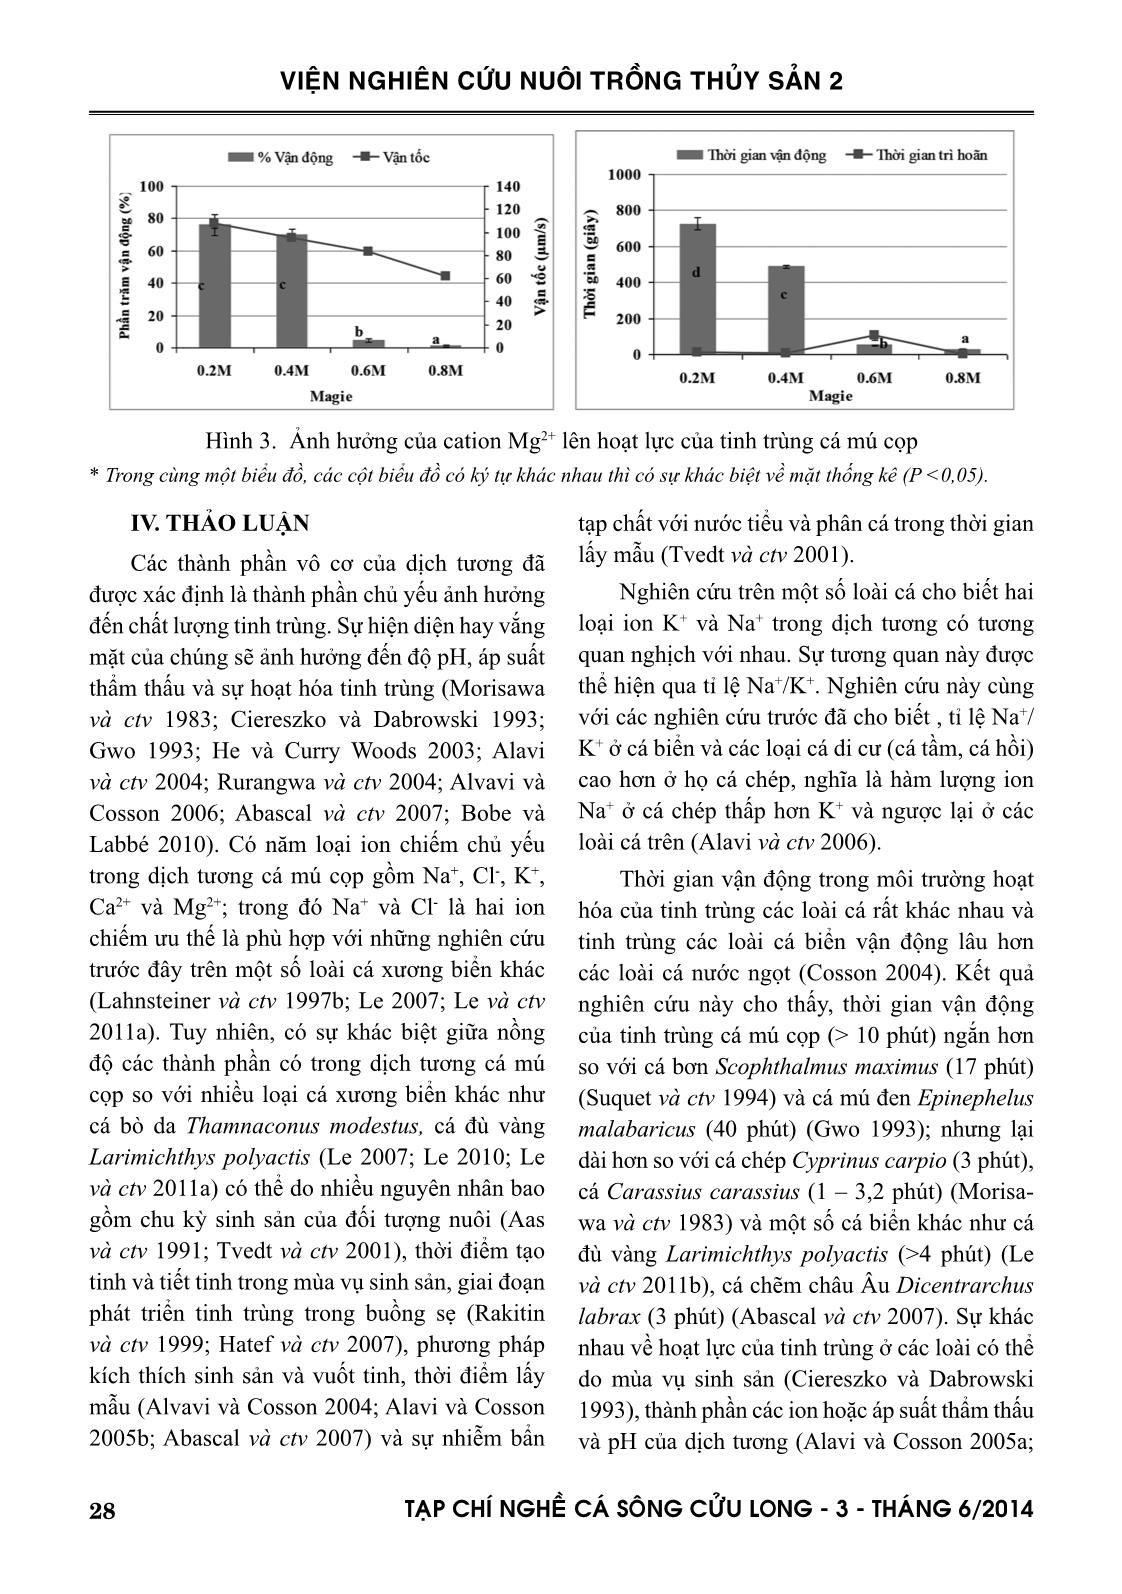 Một số đặc tính của tinh trùng và ảnh hưởng các cation lên hoạt lực của tinh trùng cá mú cọp (Epinephelus fuscoguttatus Forsskal, 1775) trang 6